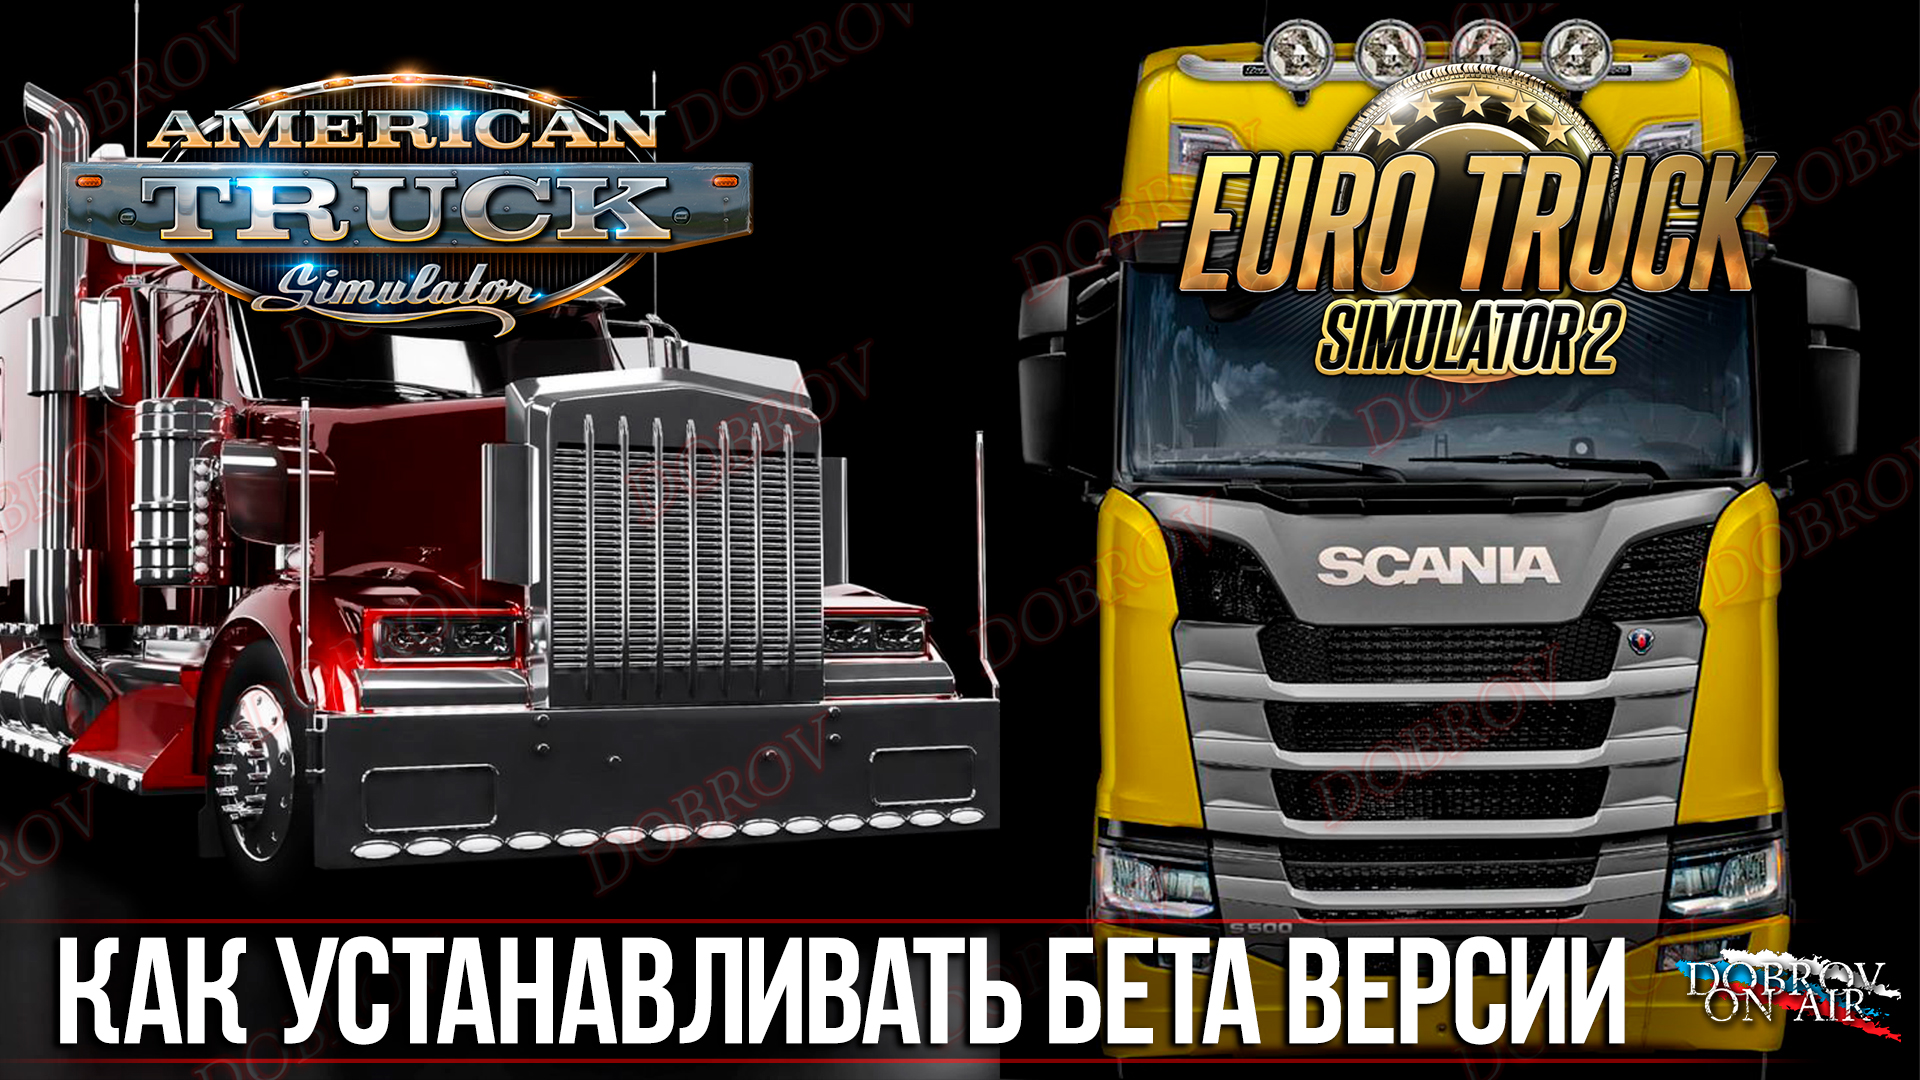 Как устанавливать BETA версии в American Truck Simulator / Euro Truck Simulator 2